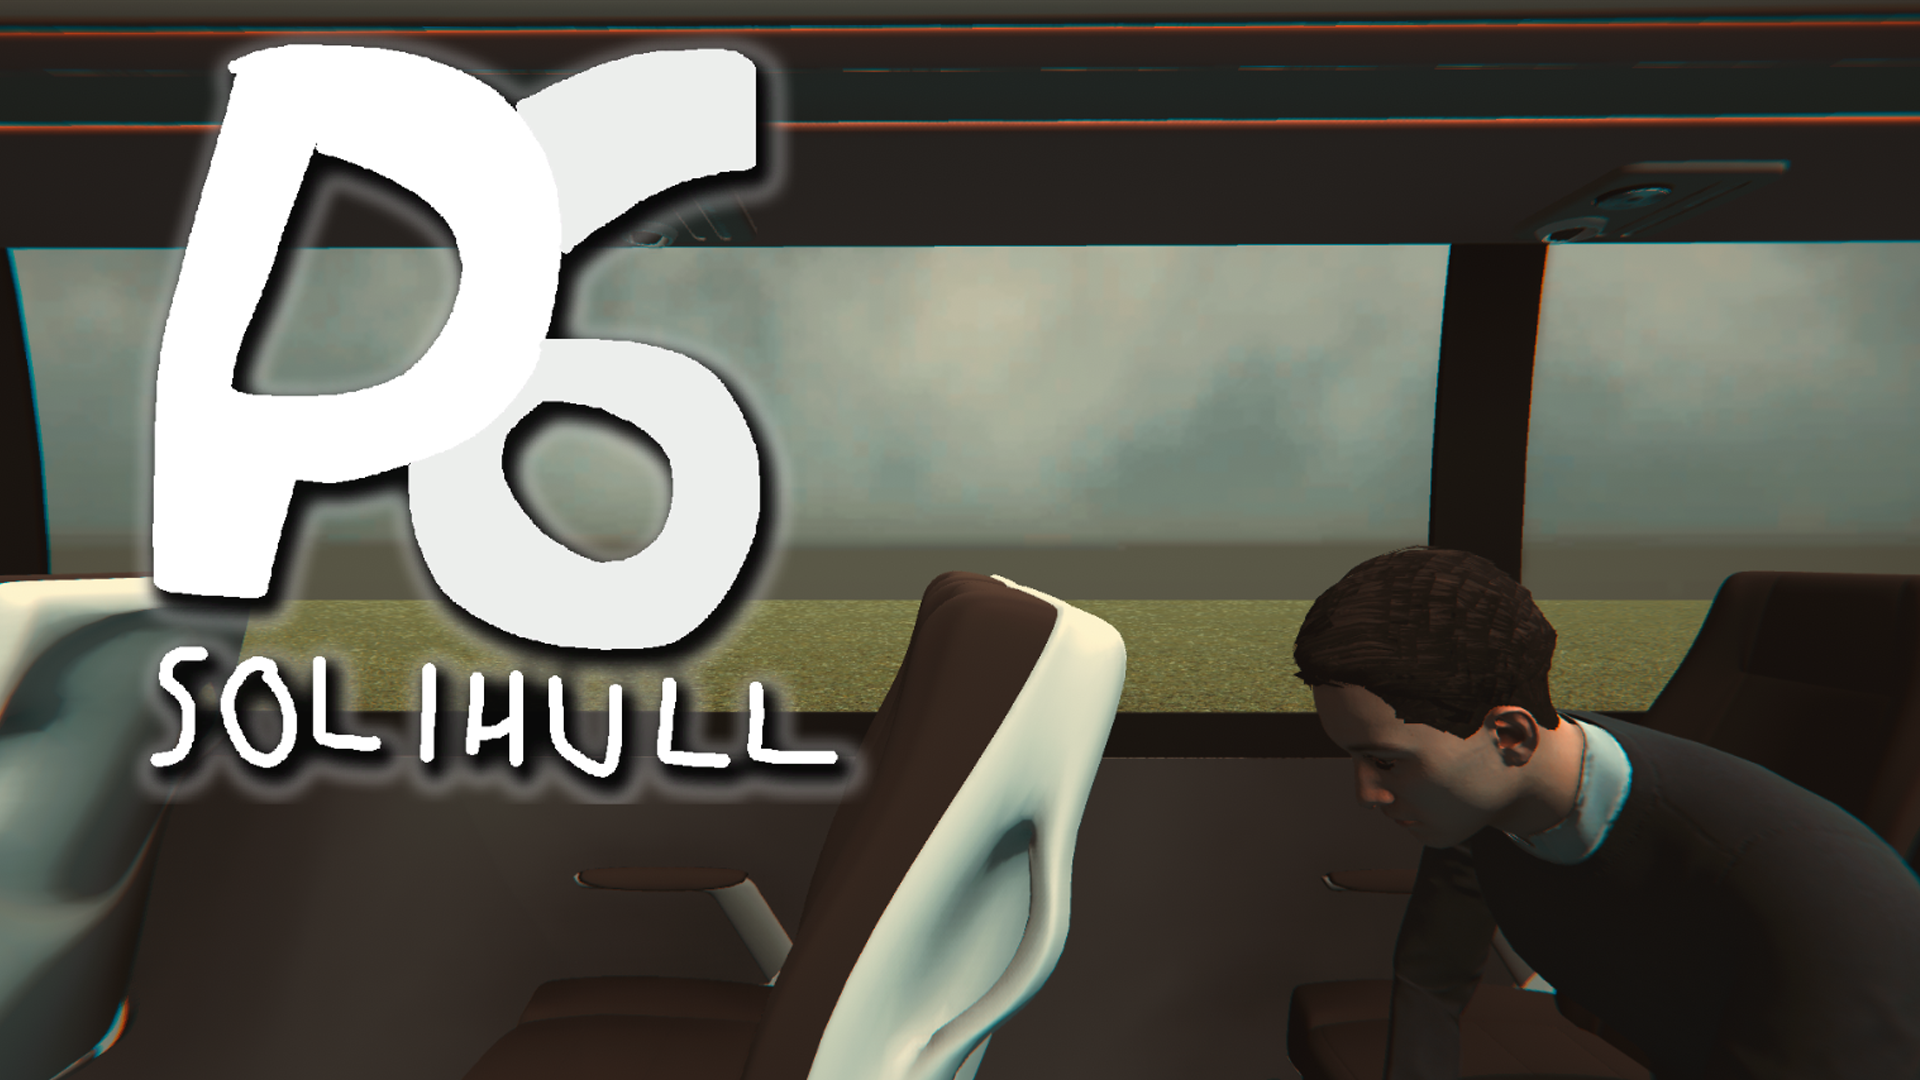 P6: Solihull